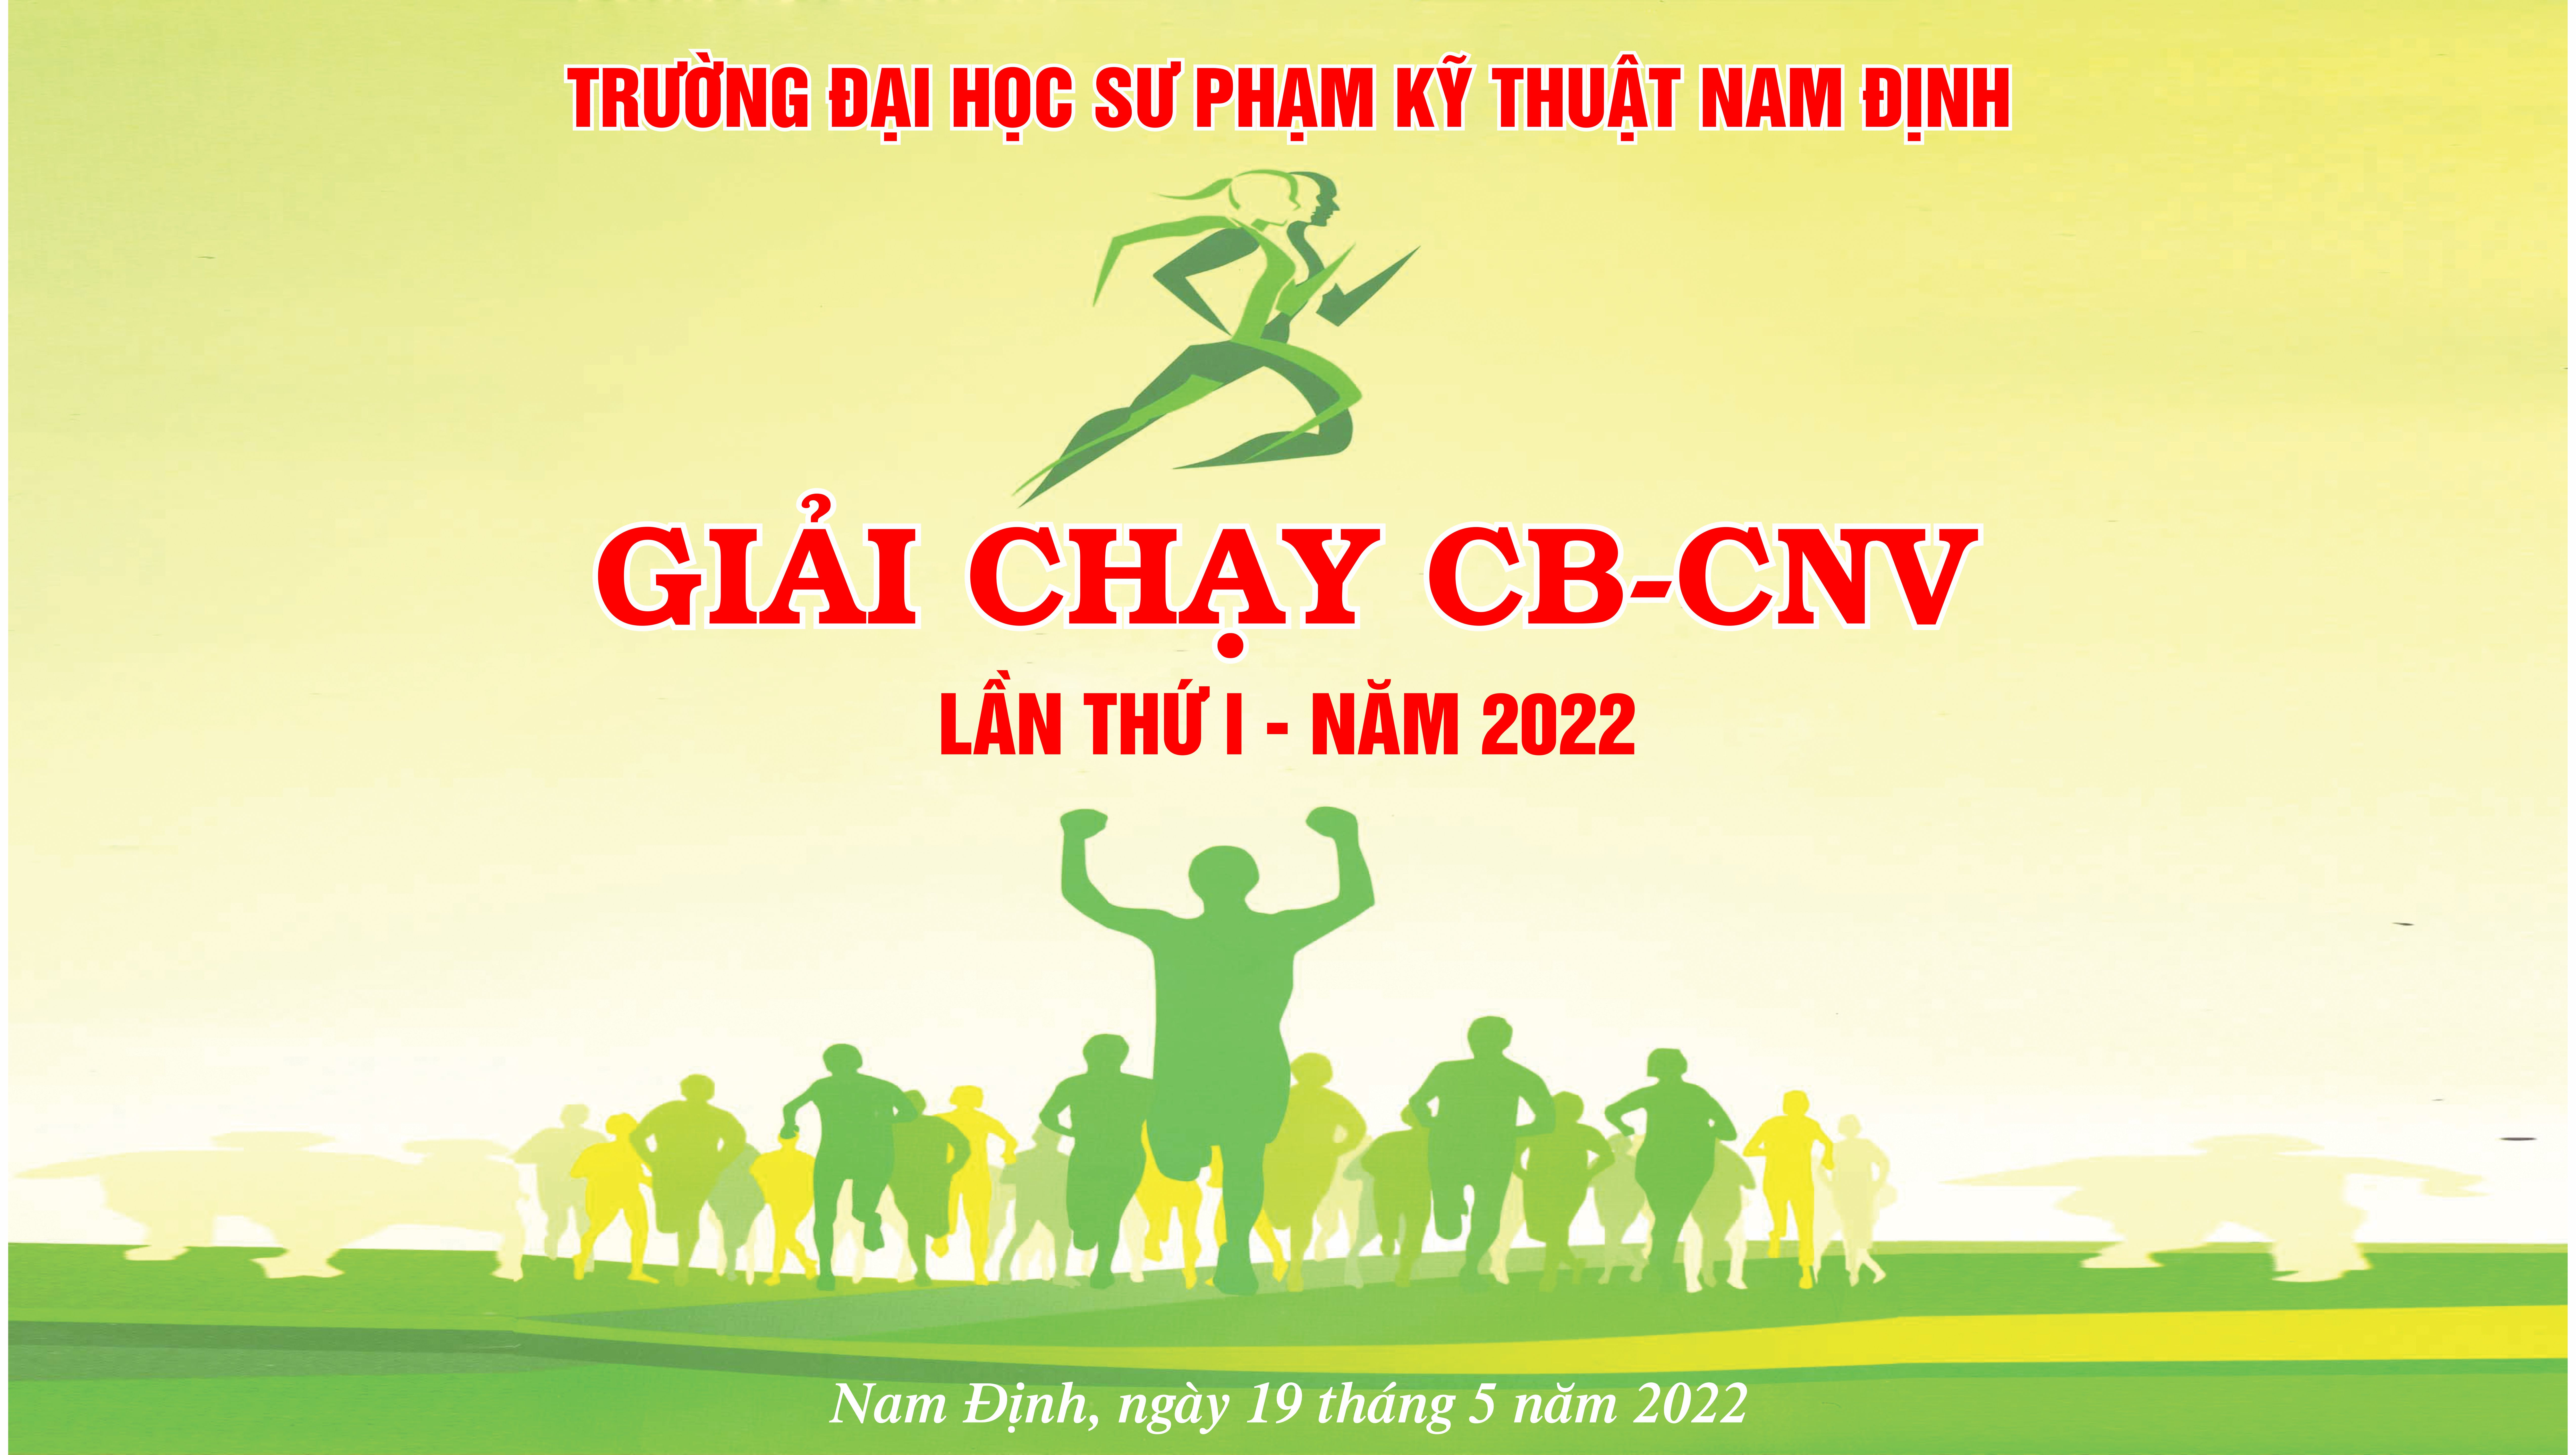 Giải chạy CB-CNV Trường Đại học SPKT Nam Định lần thứ I - 2022